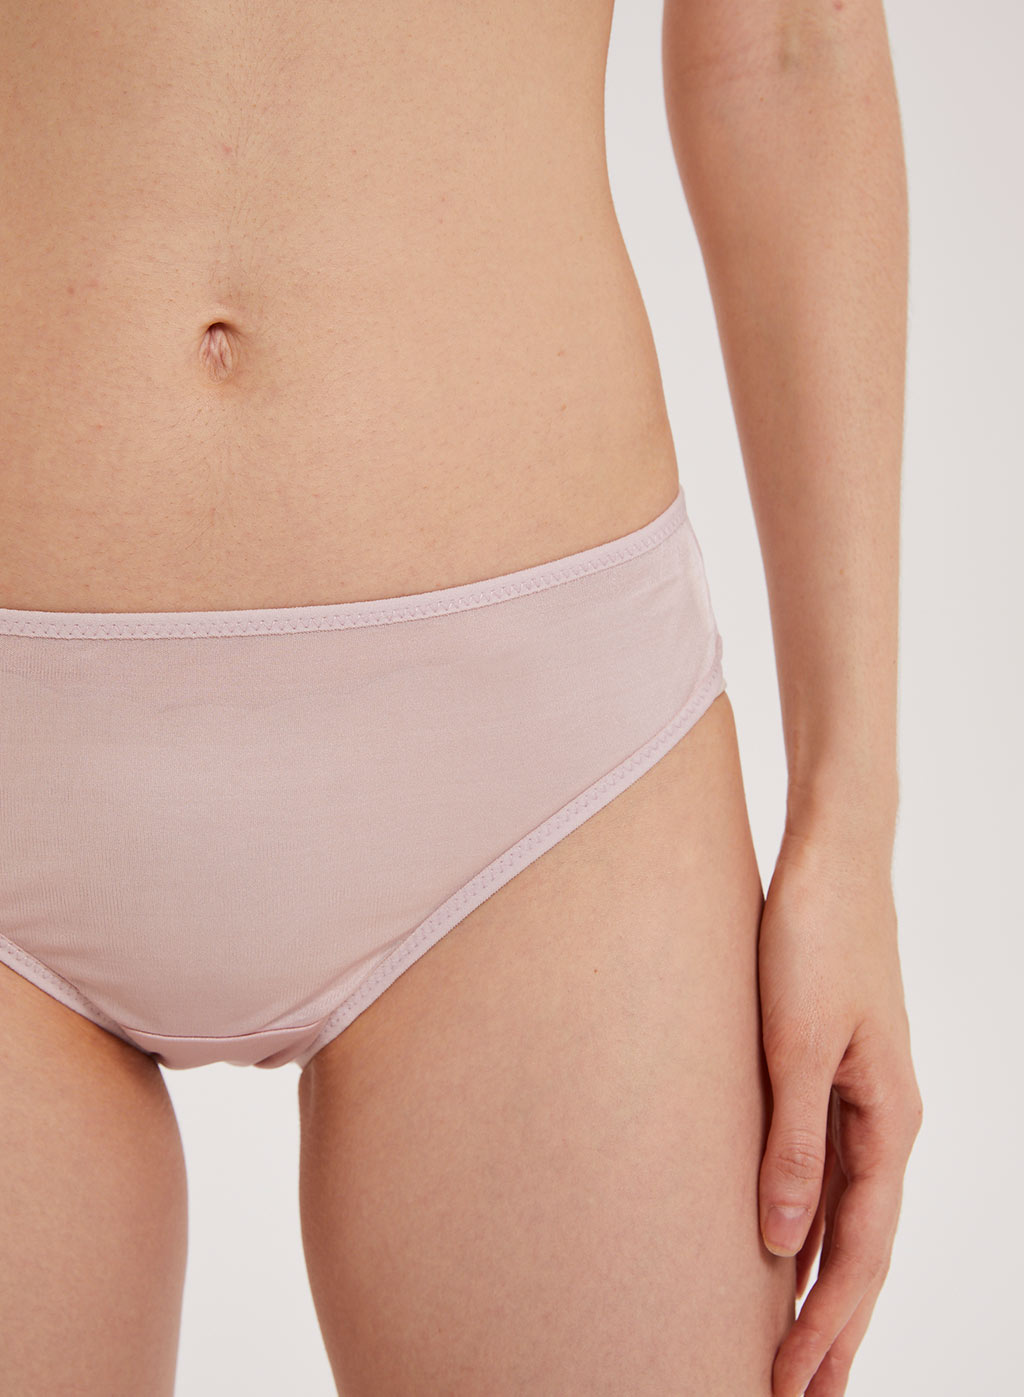 100% Silk No-Show Underwear, Women's Solid Bra